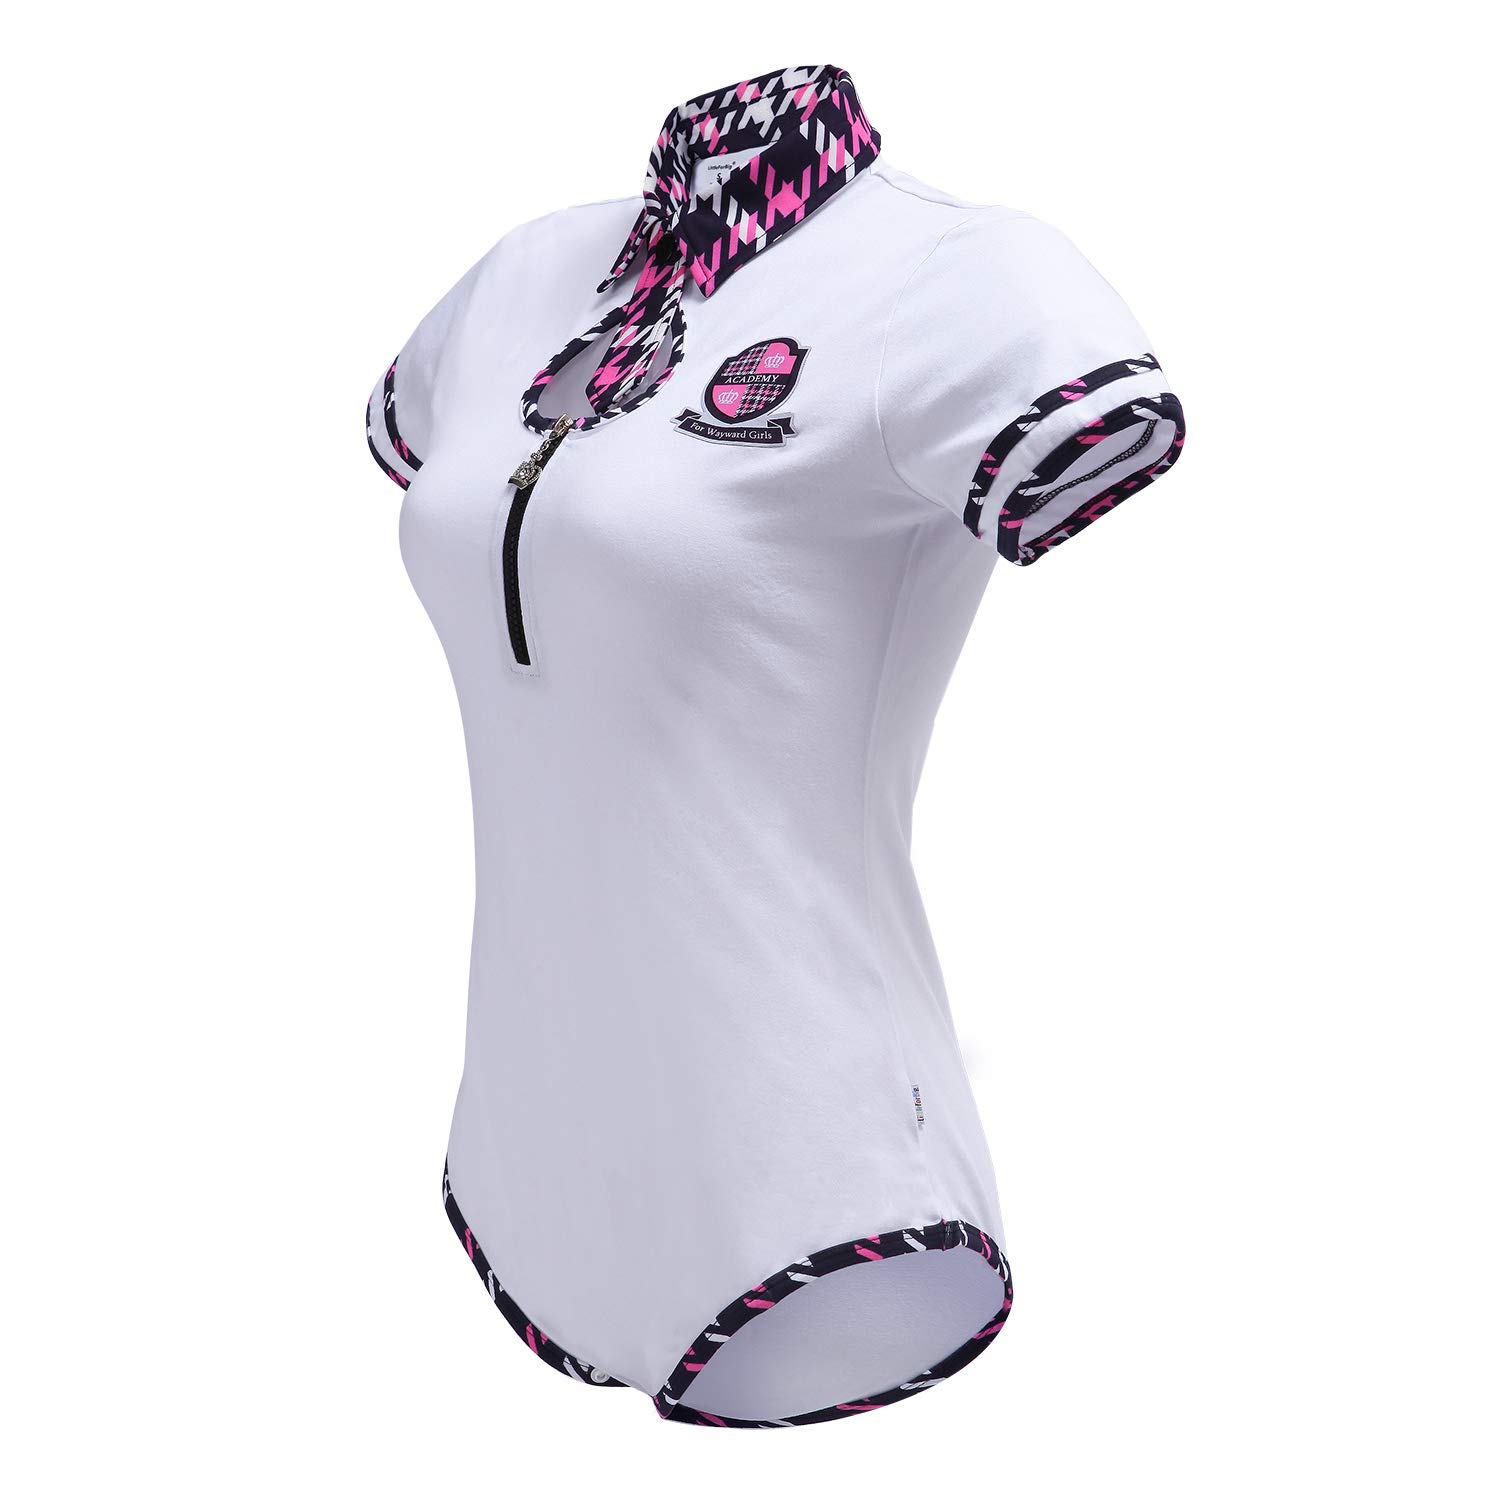 Littleforbig Cotton Romper Onesie Pajamas Bodysuit – Wayward Girls School Uniform